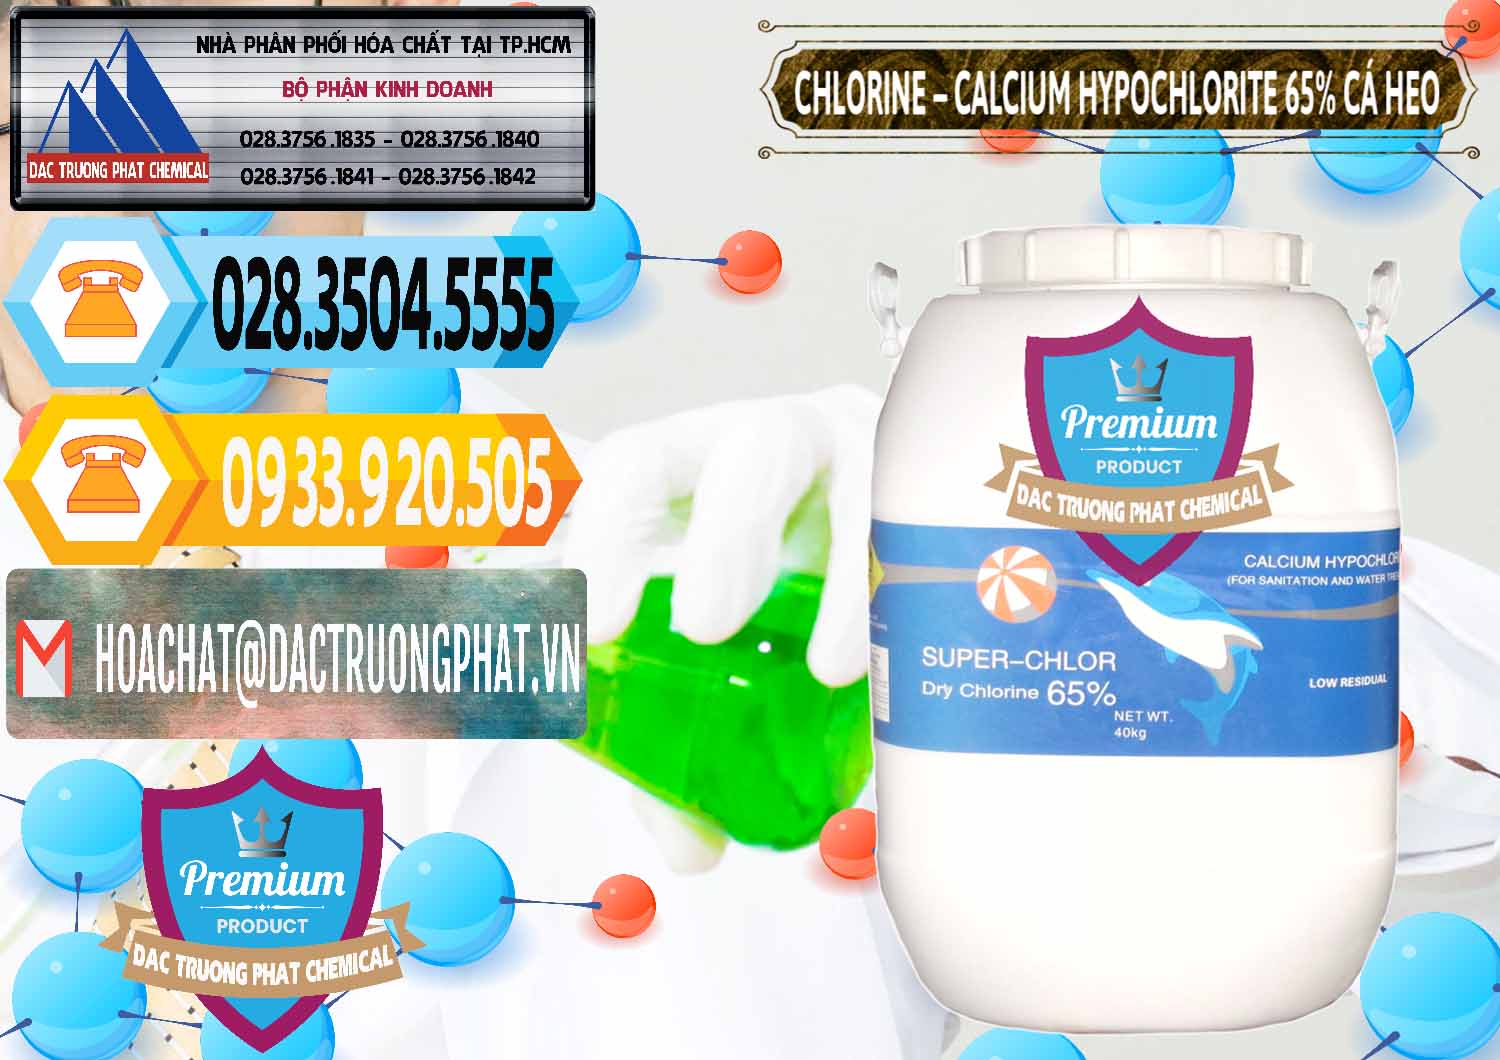 Cty chuyên nhập khẩu và bán Clorin - Chlorine Cá Heo 65% Trung Quốc China - 0053 - Cty bán & cung cấp hóa chất tại TP.HCM - hoachattayrua.net